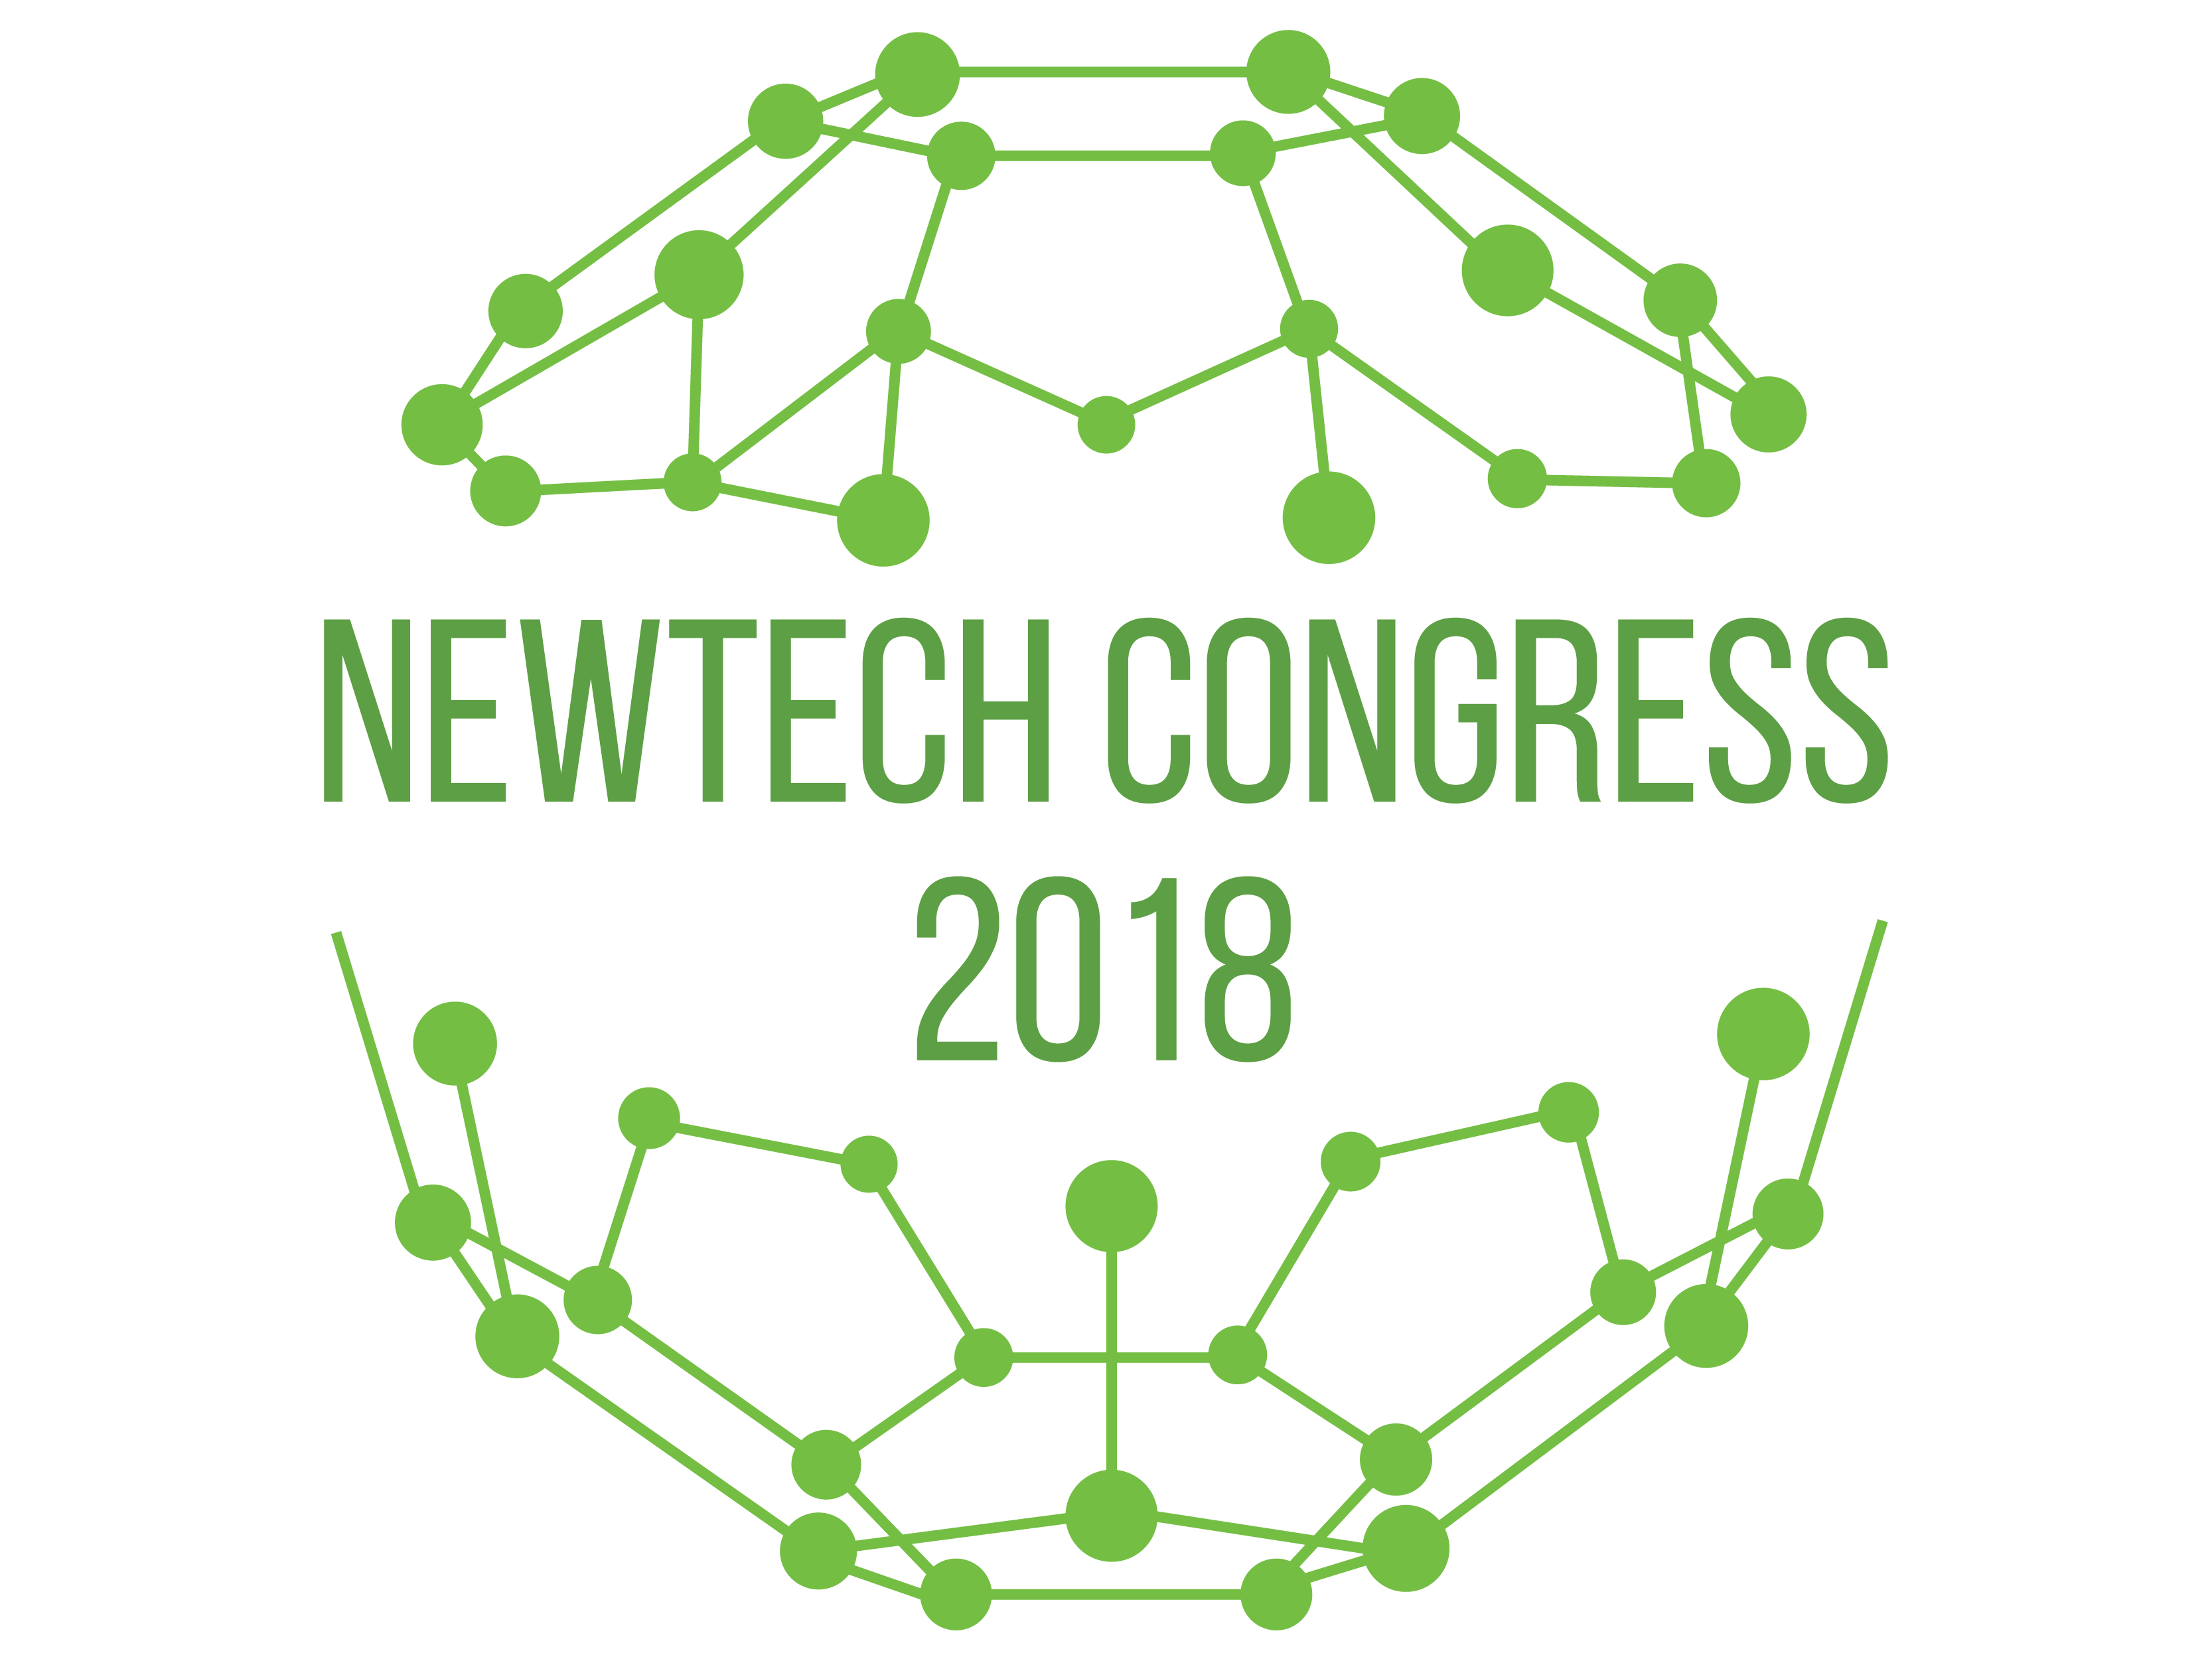 4th World Congress on 
New Technologies (NewTech'18)